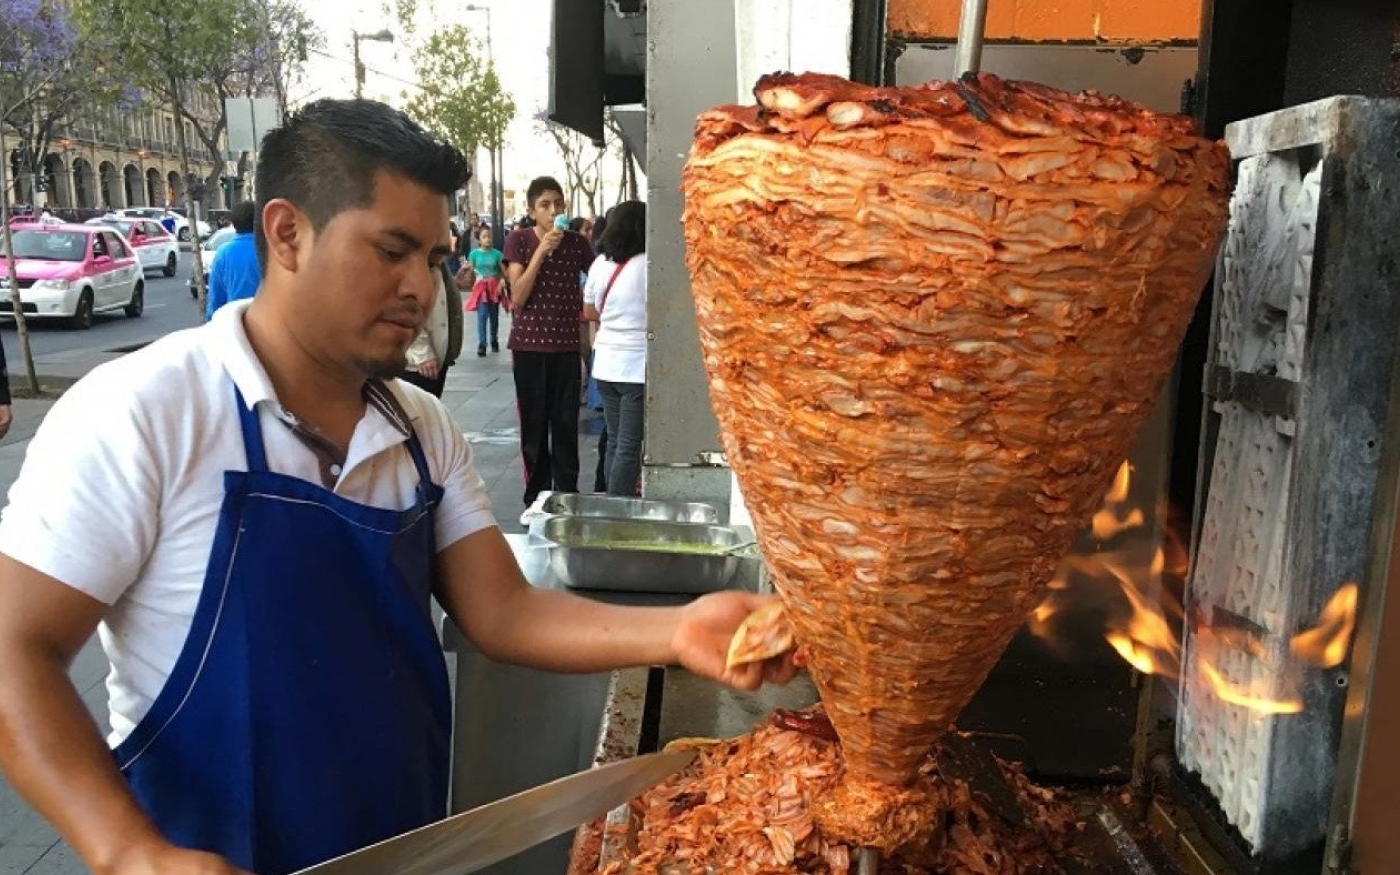 Un vendeur à Mexico découpe de la viande pour préparer des tacos al pastor, un plat probablement dérivé du chawarma, introduit par les immigrés libanais au début du XXe siècle (MEE/Alex Shams)